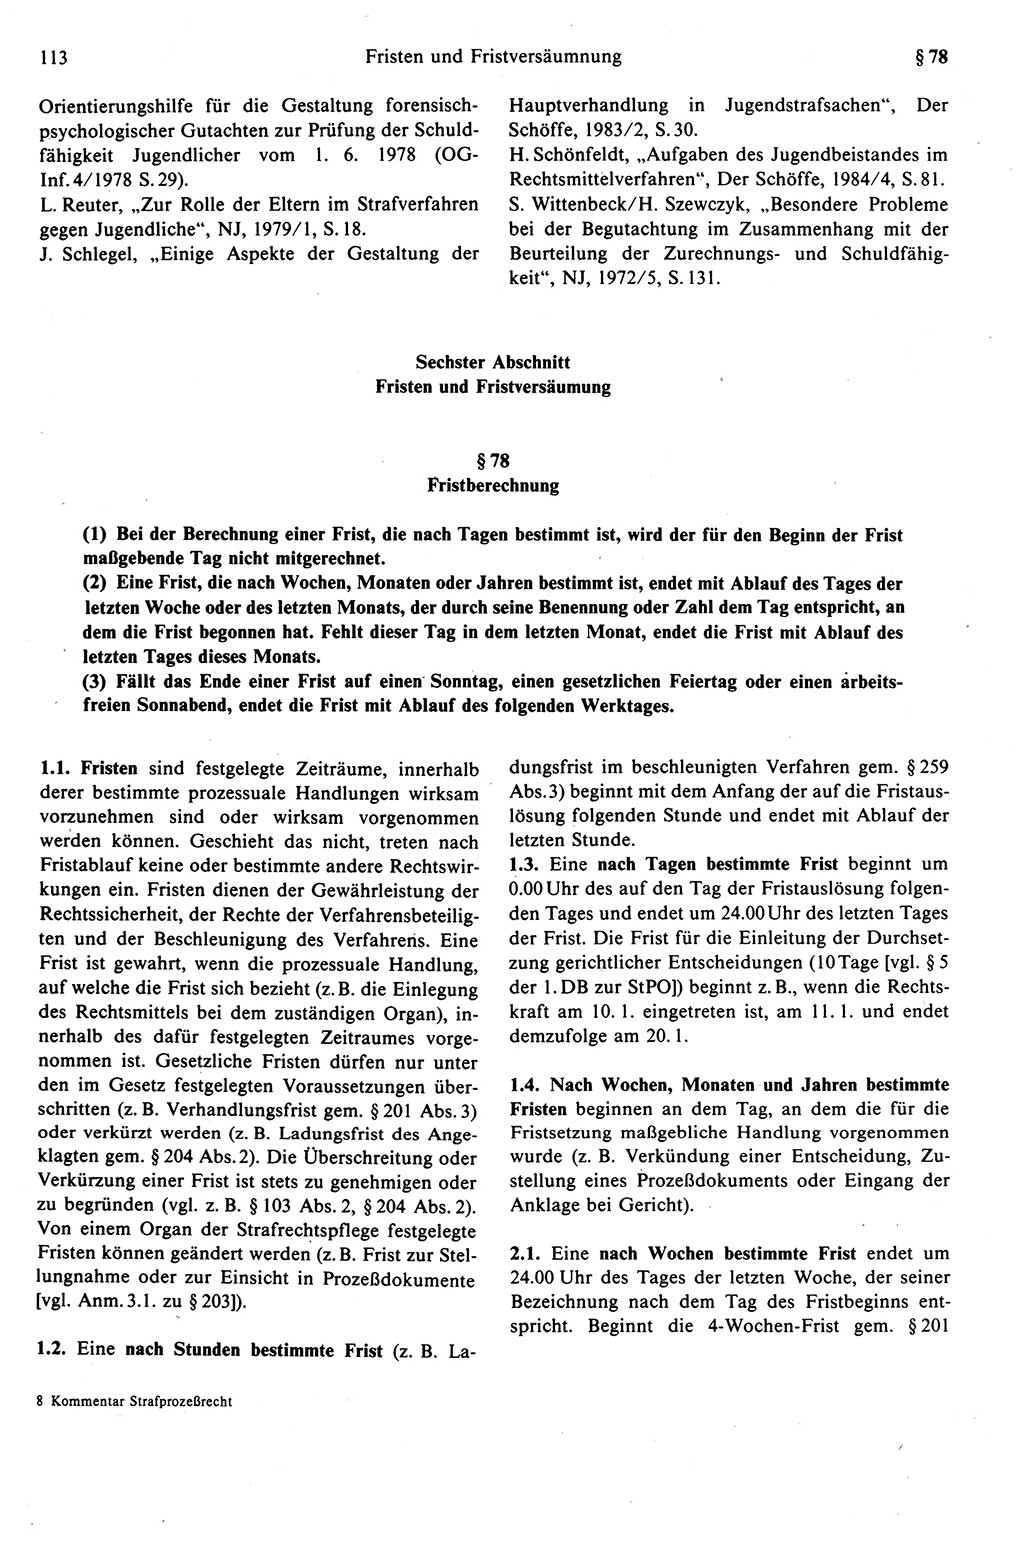 Strafprozeßrecht der DDR (Deutsche Demokratische Republik), Kommentar zur Strafprozeßordnung (StPO) 1989, Seite 113 (Strafprozeßr. DDR Komm. StPO 1989, S. 113)